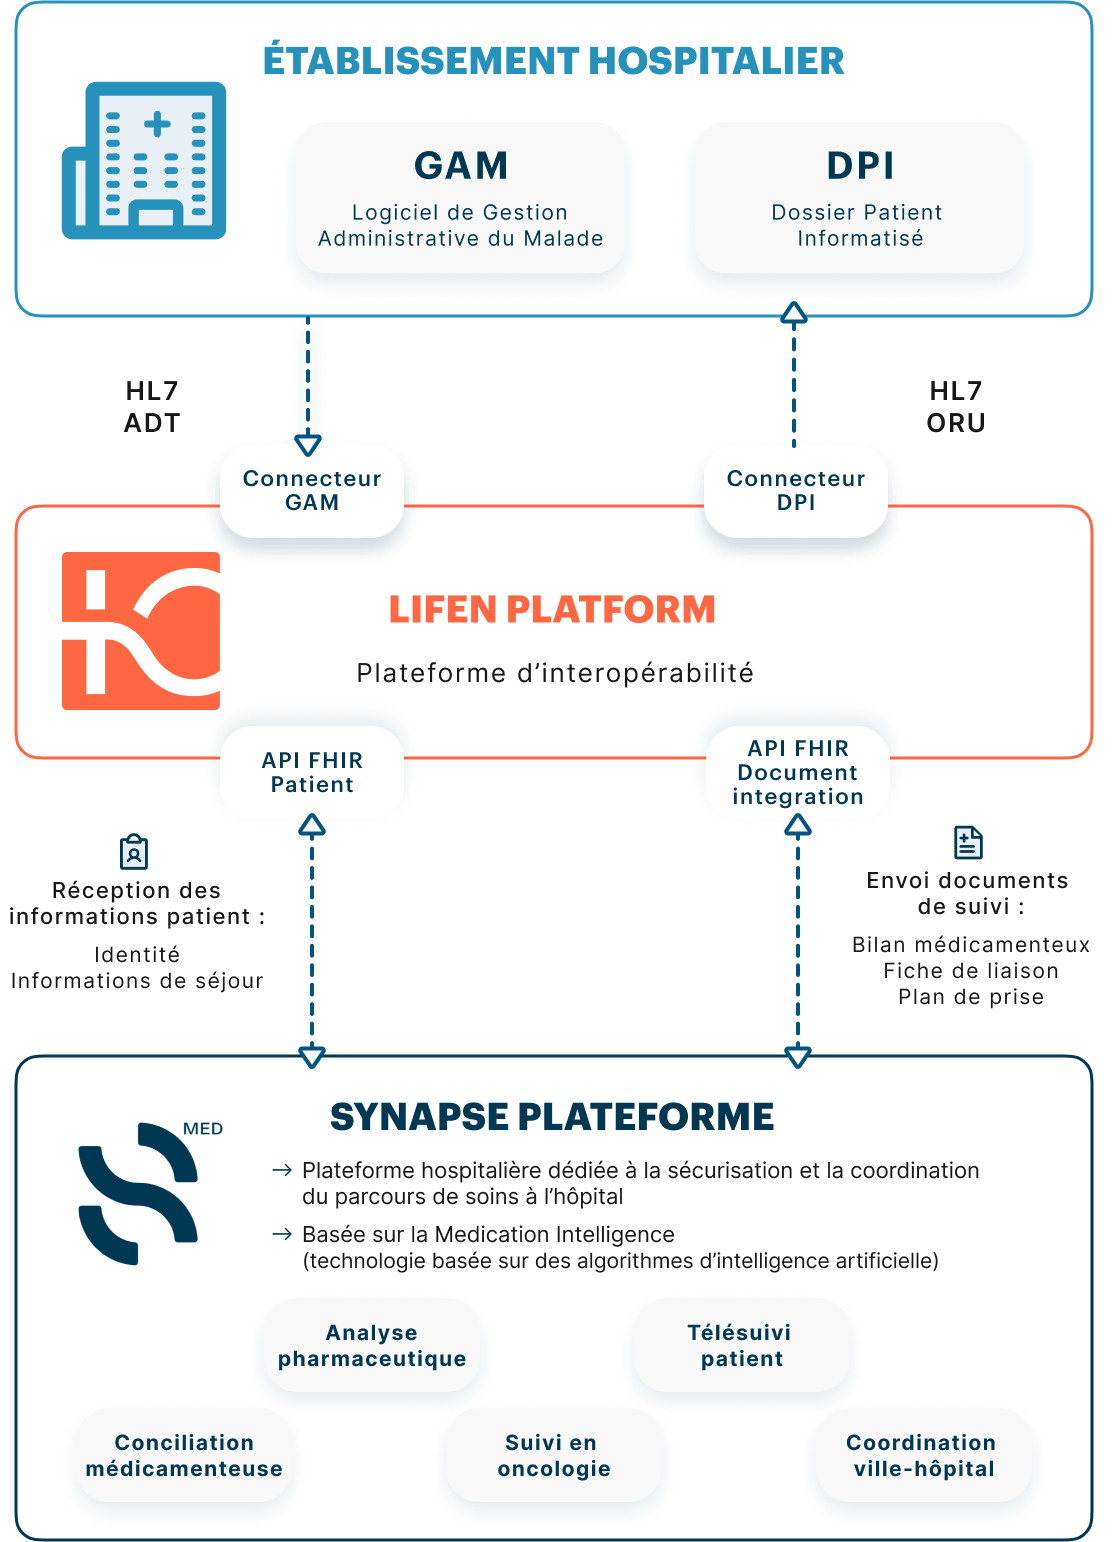 schema détaillée de l'intégration entre Synapse et Lifen pour digitaliser les établissements hospitaliers